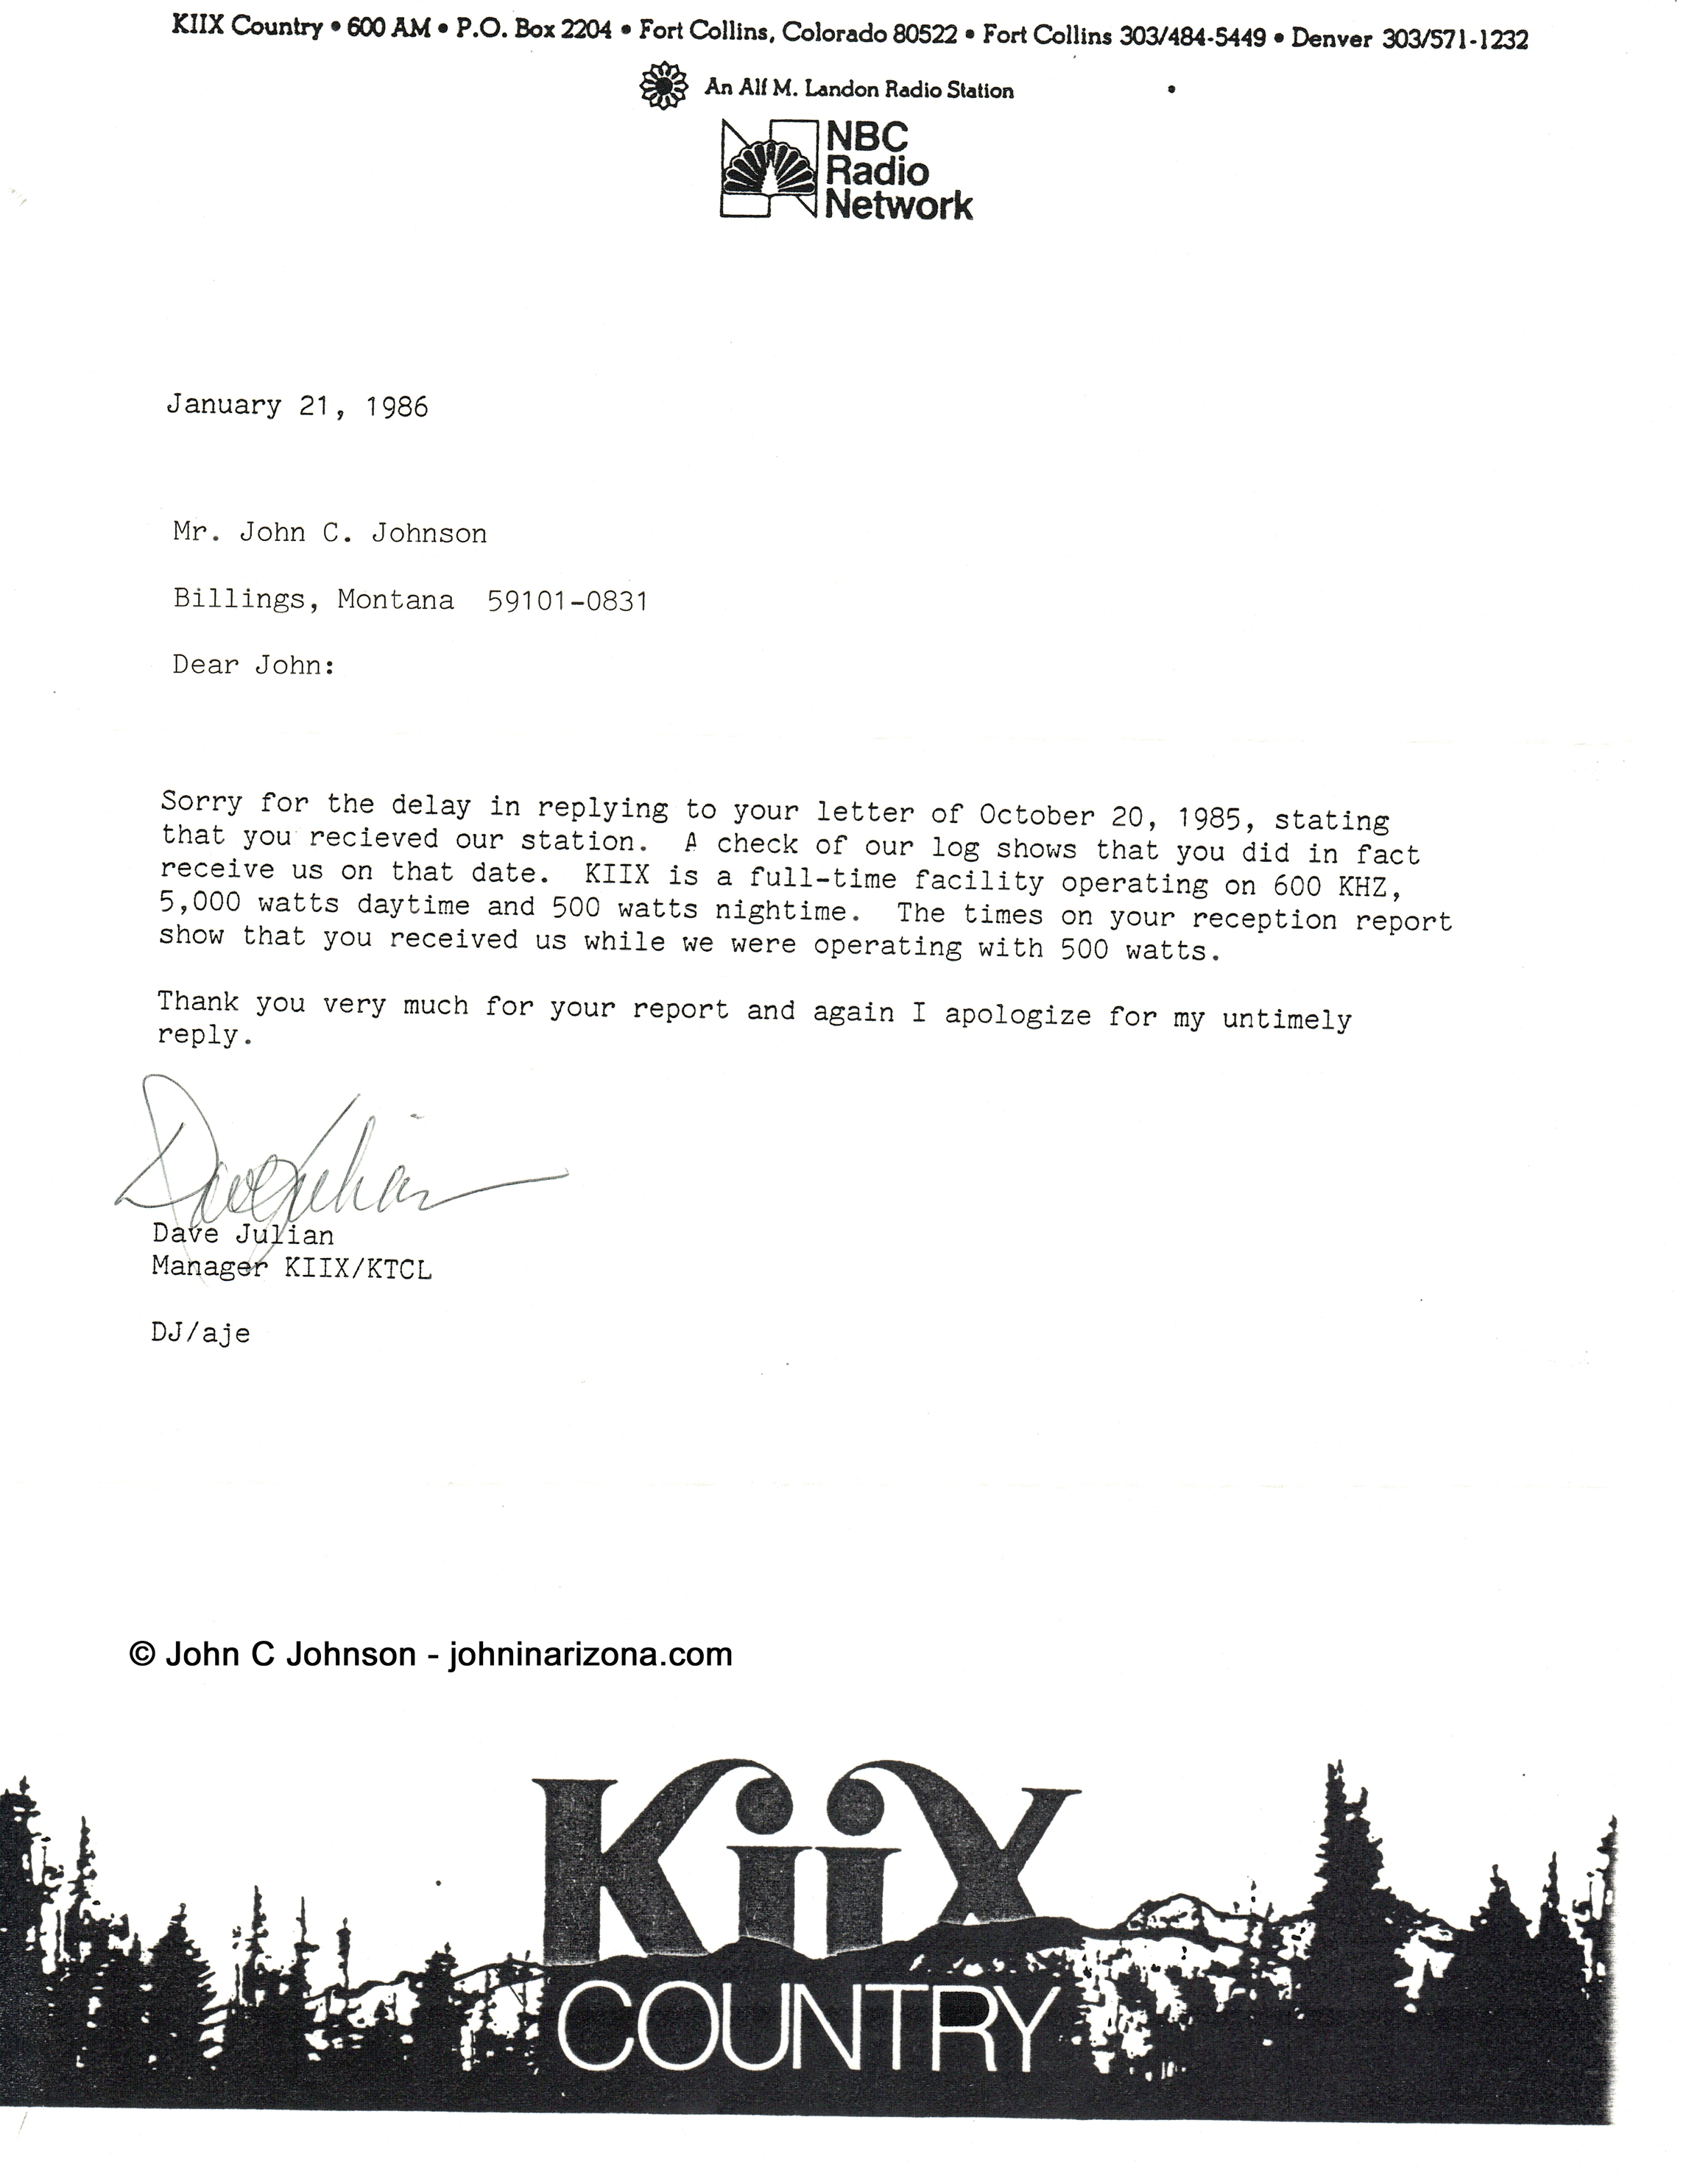 KIIX Radio 600 Fort Collins, Colorado